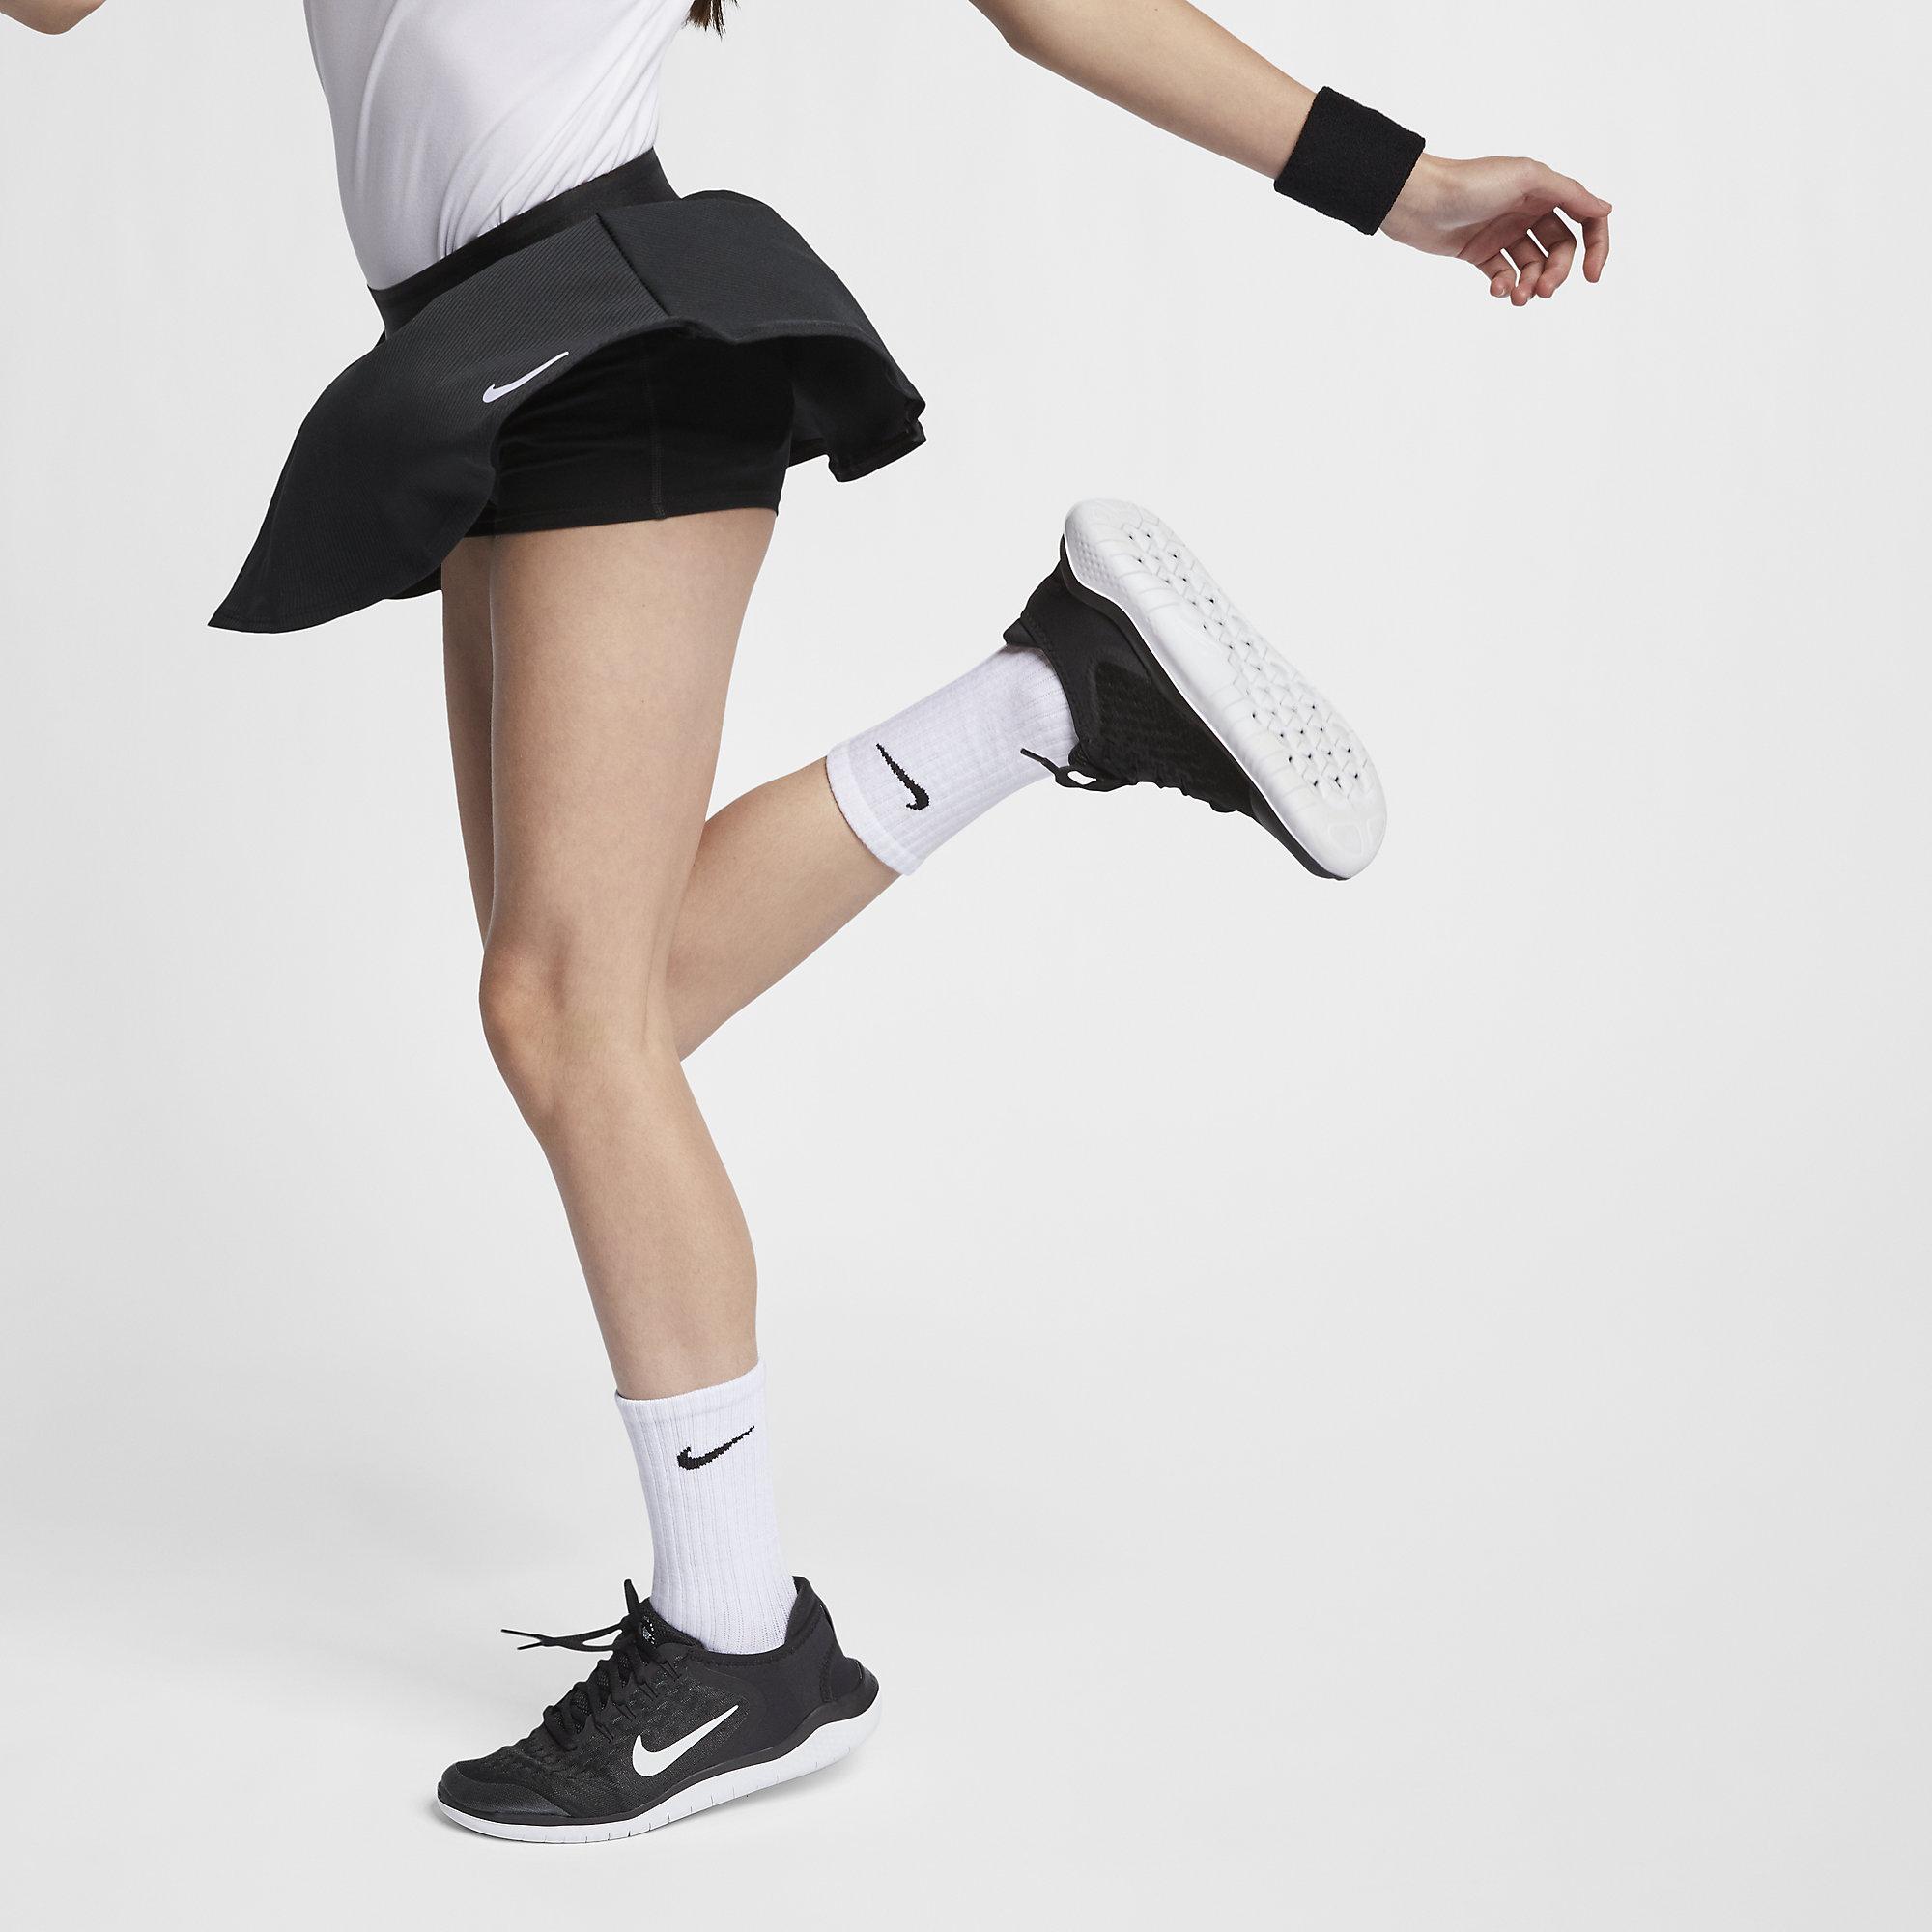 Теннисные юбки в школу. Nike юбка w NKCT ELVTD Flouncy skirt. Nike теннисная юбка 2020. Теннисная юбка Шейн. Юбка-шорты найк для тенниса для девочек.